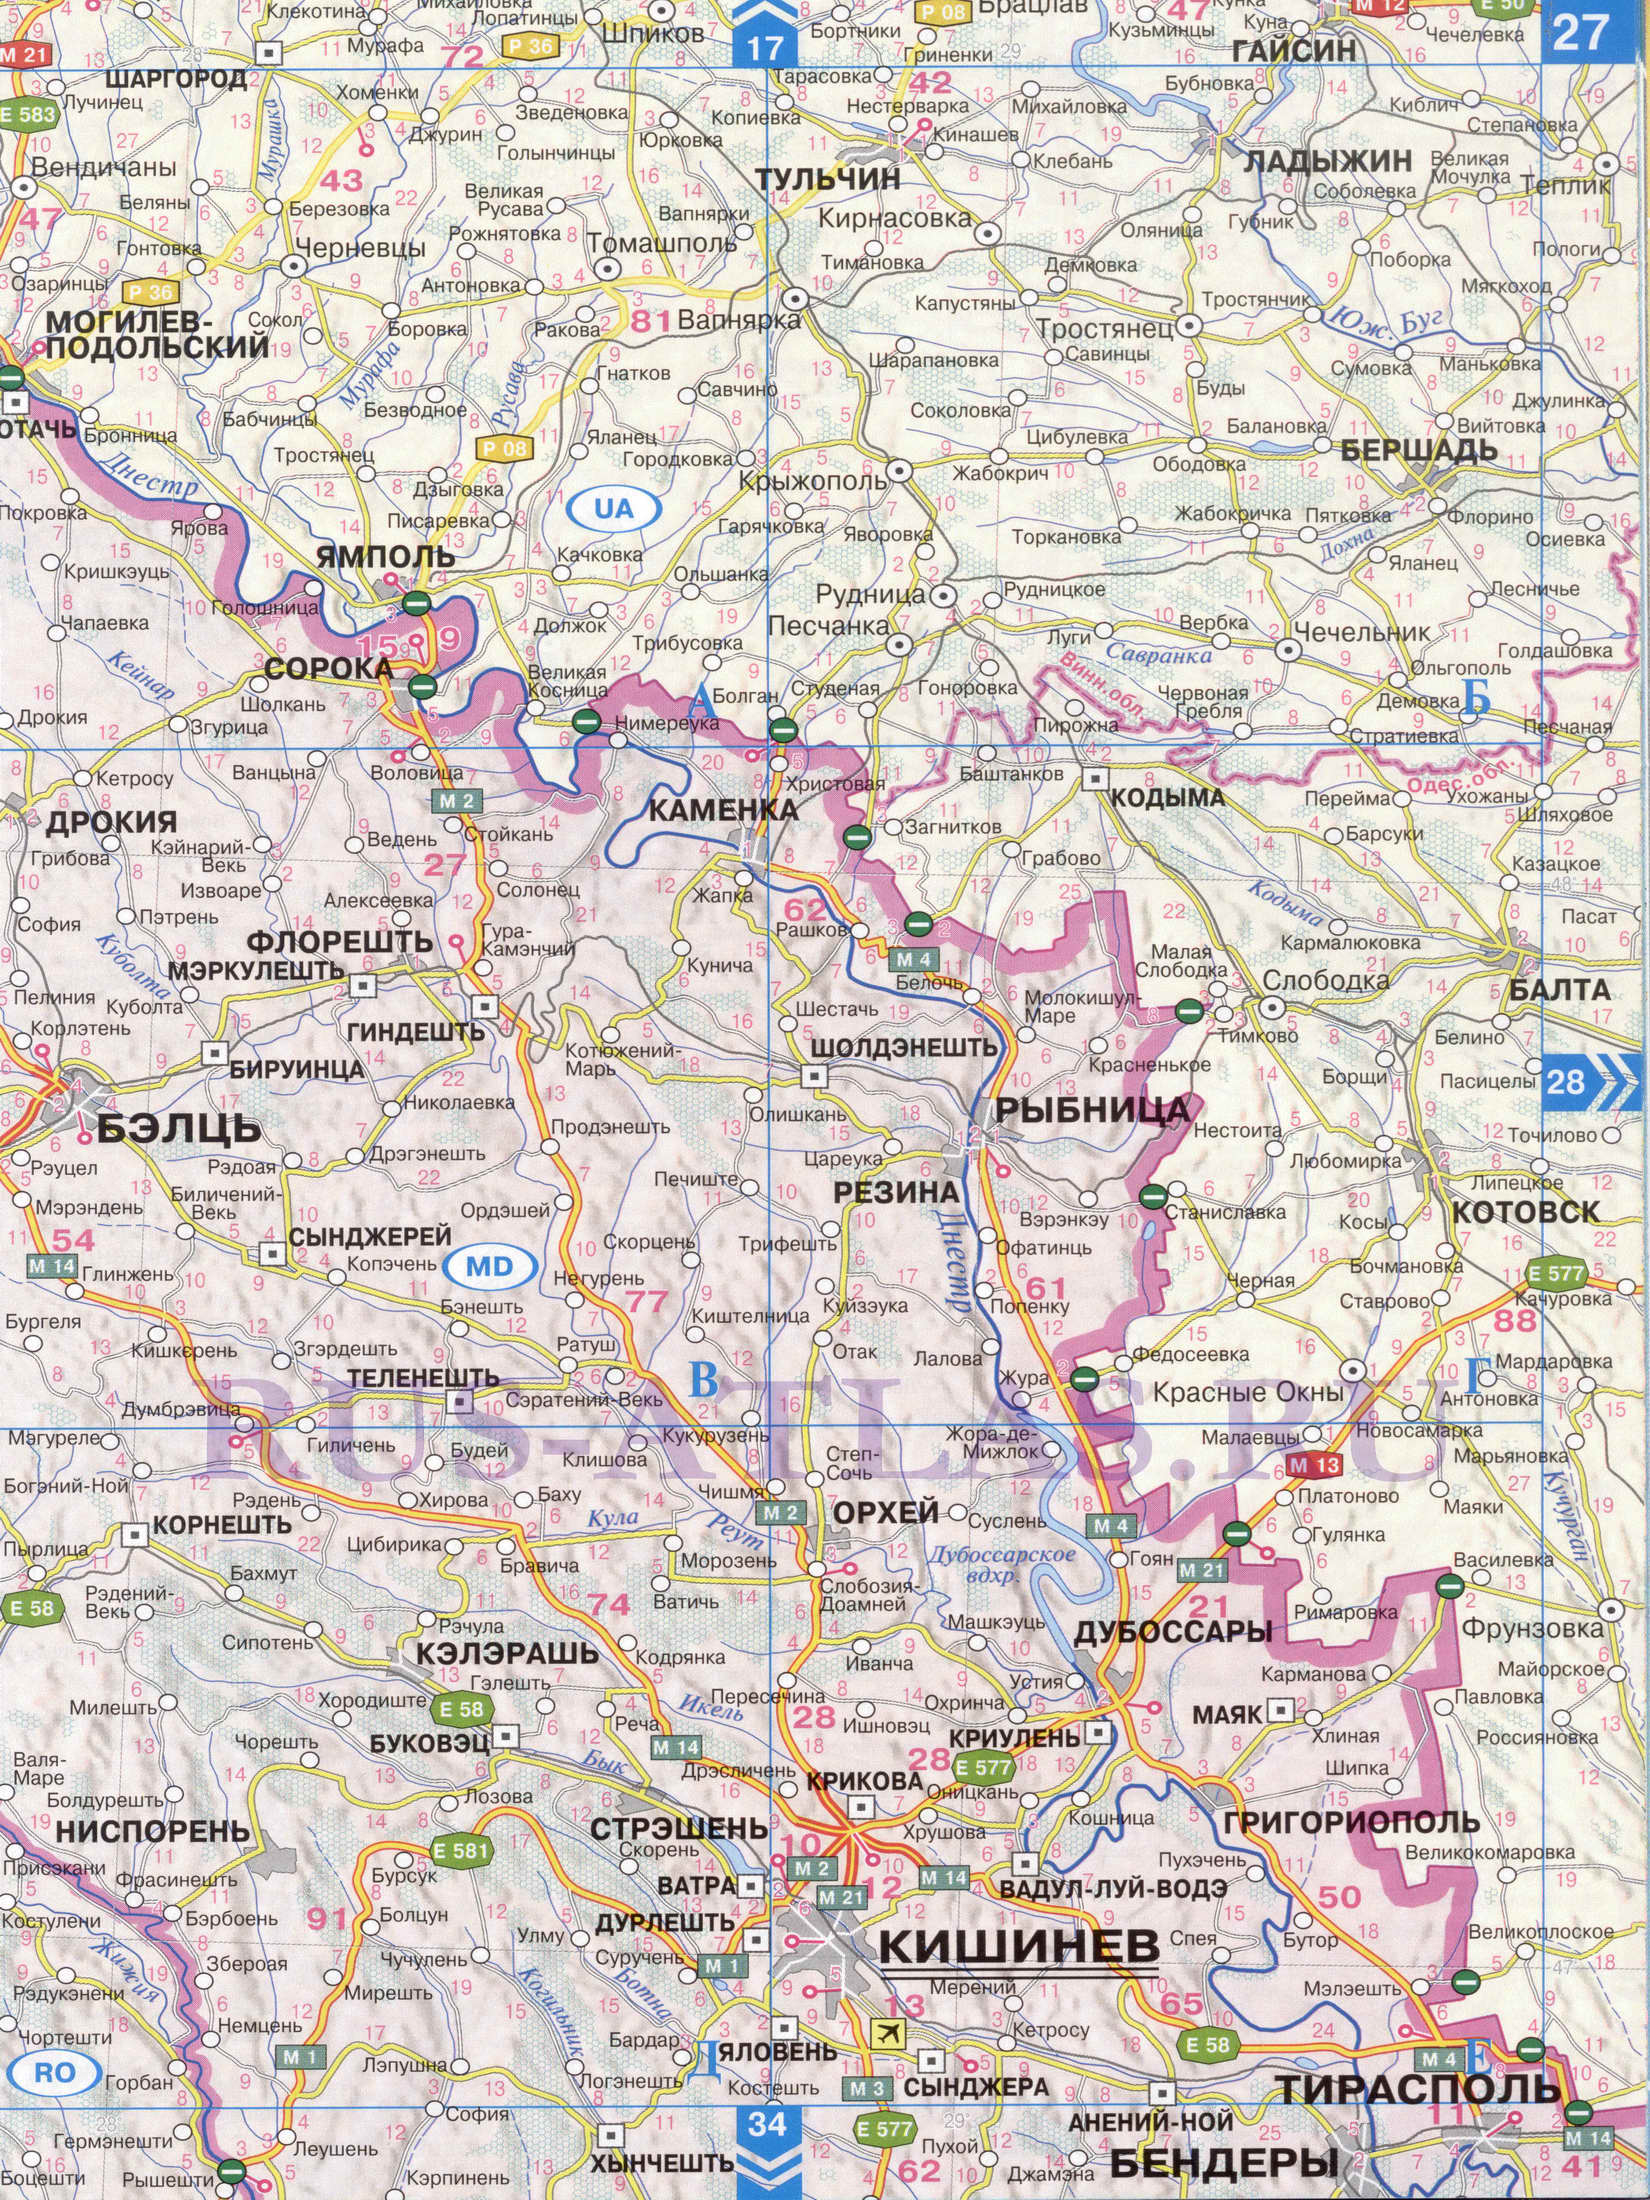 Автомобильная карта Одесской области. Атлас дорог СНГ - карта Одесской области и Молдавии, A0 - 